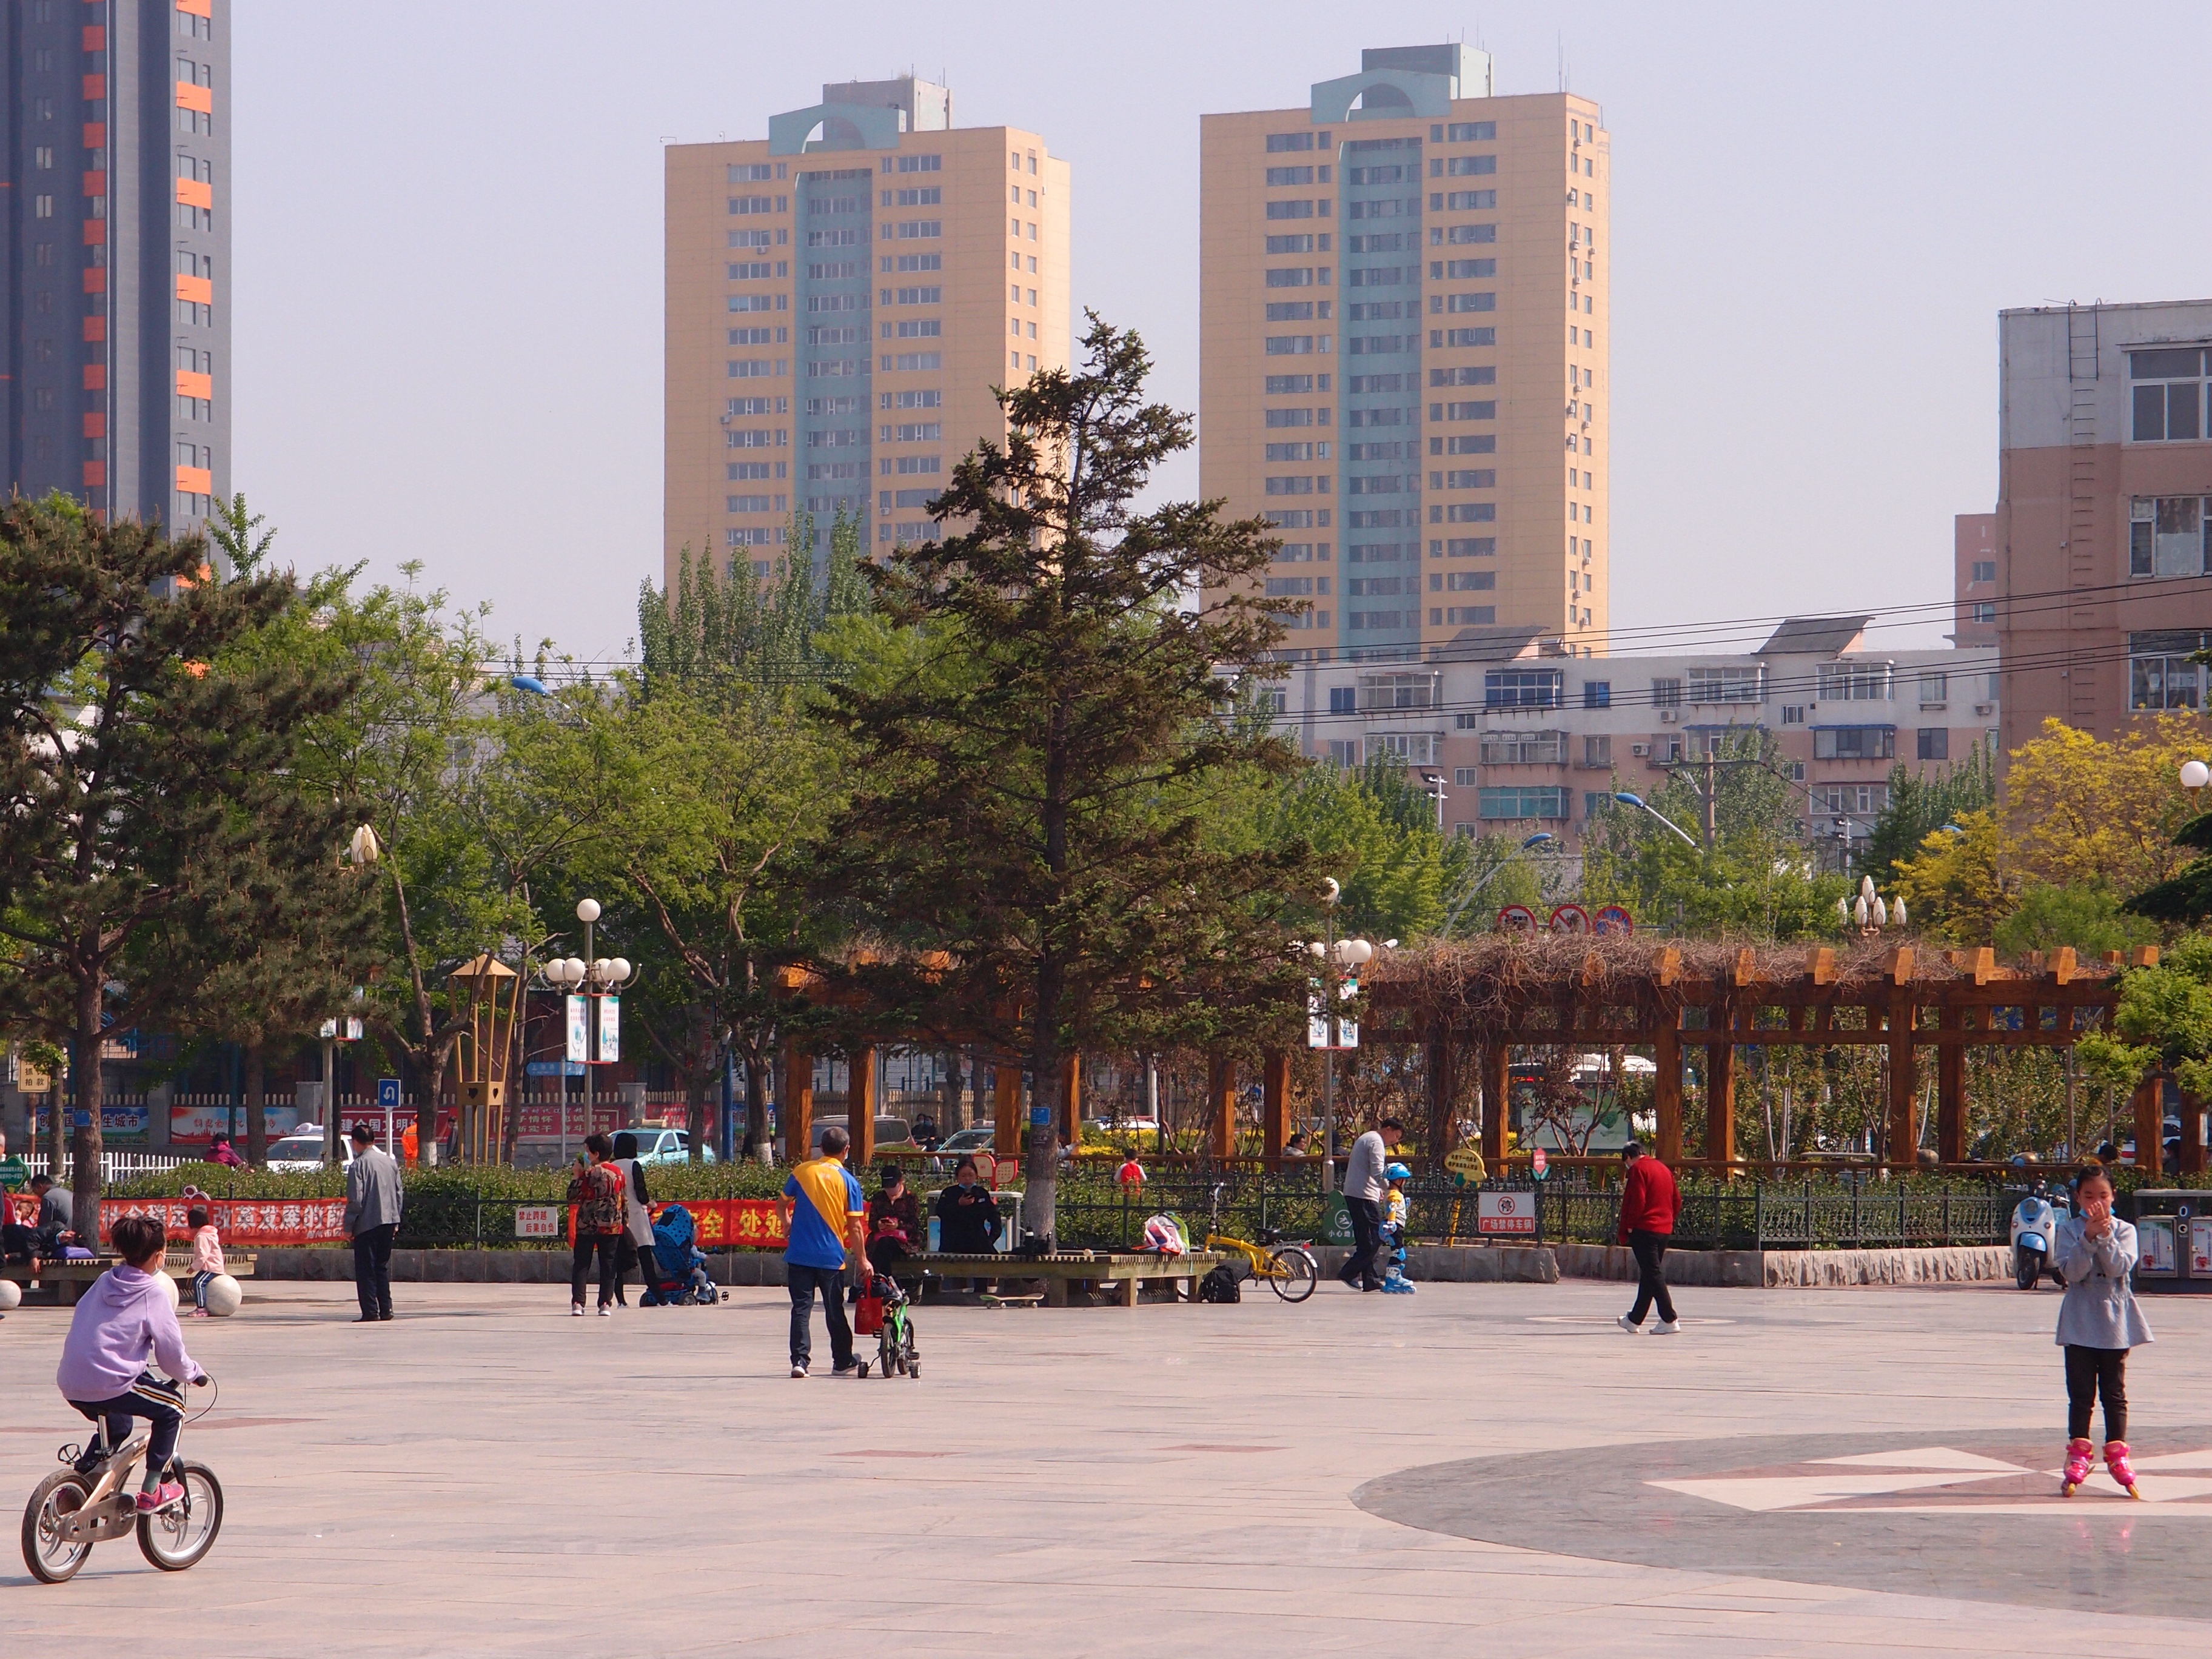 宝石广场位于锦州医科大学附属三院的西南侧,在牡丹丛中,远远地可以